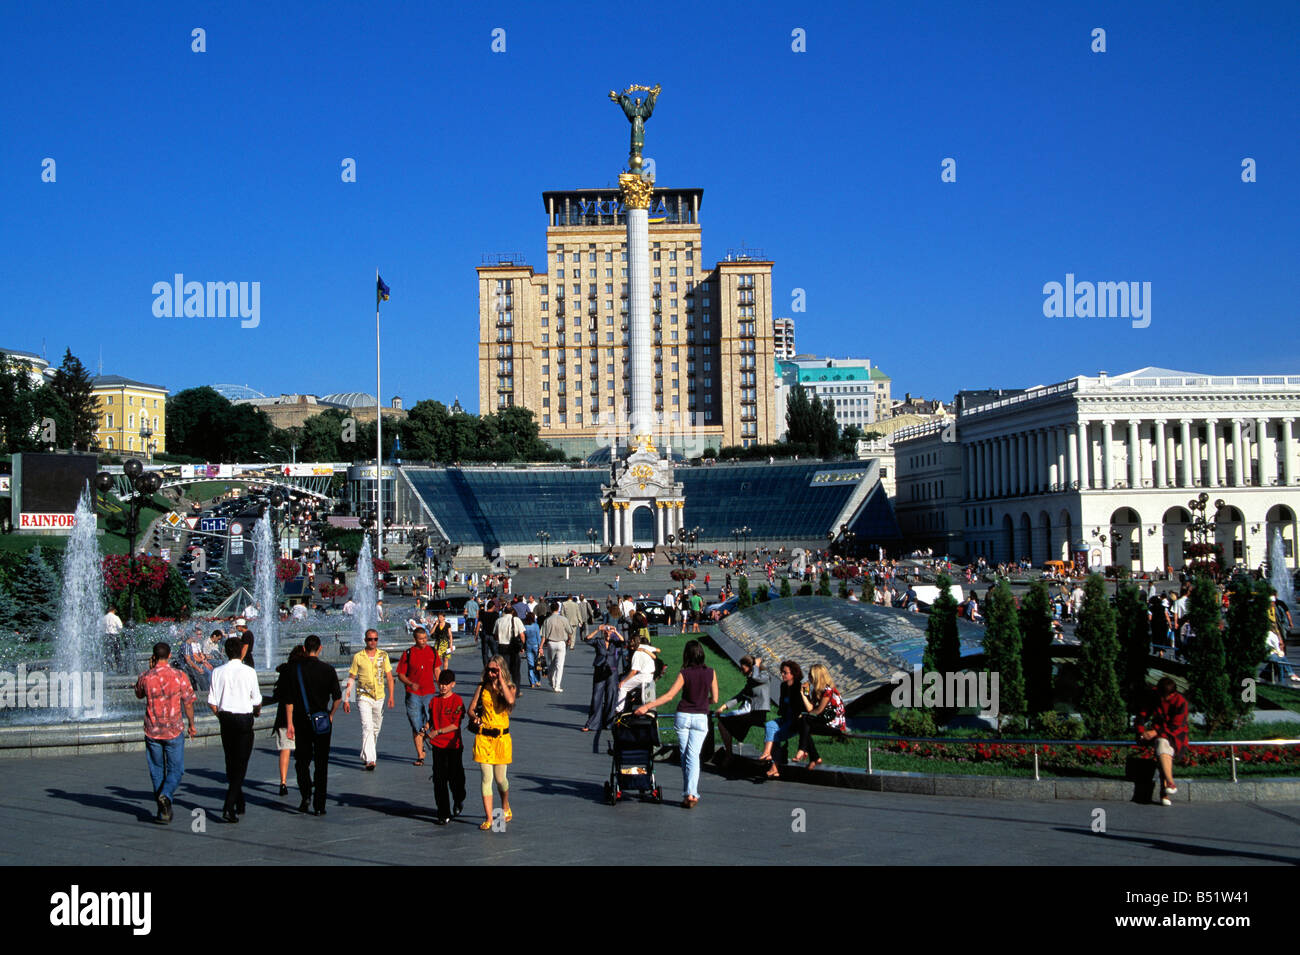 People in Maidan Nezalezhnosti Independence Square in Kiev, Ukraine Stock Photo